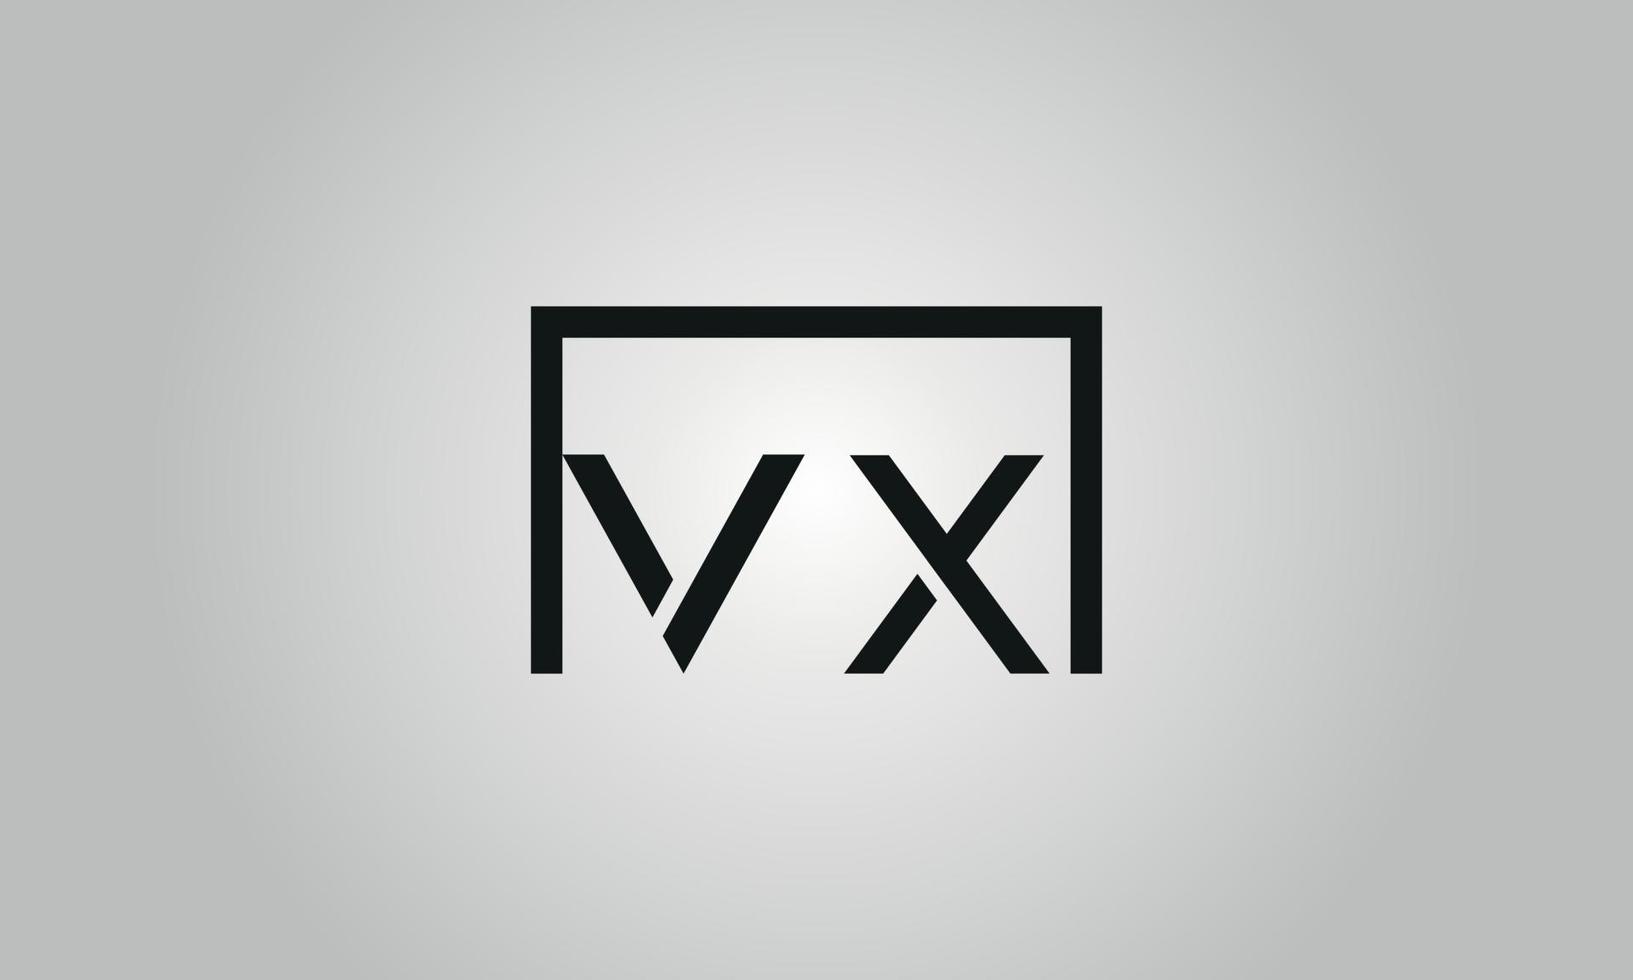 Buchstabe vx-Logo-Design. vx-Logo mit quadratischer Form in schwarzen Farben Vektor kostenlose Vektorvorlage.